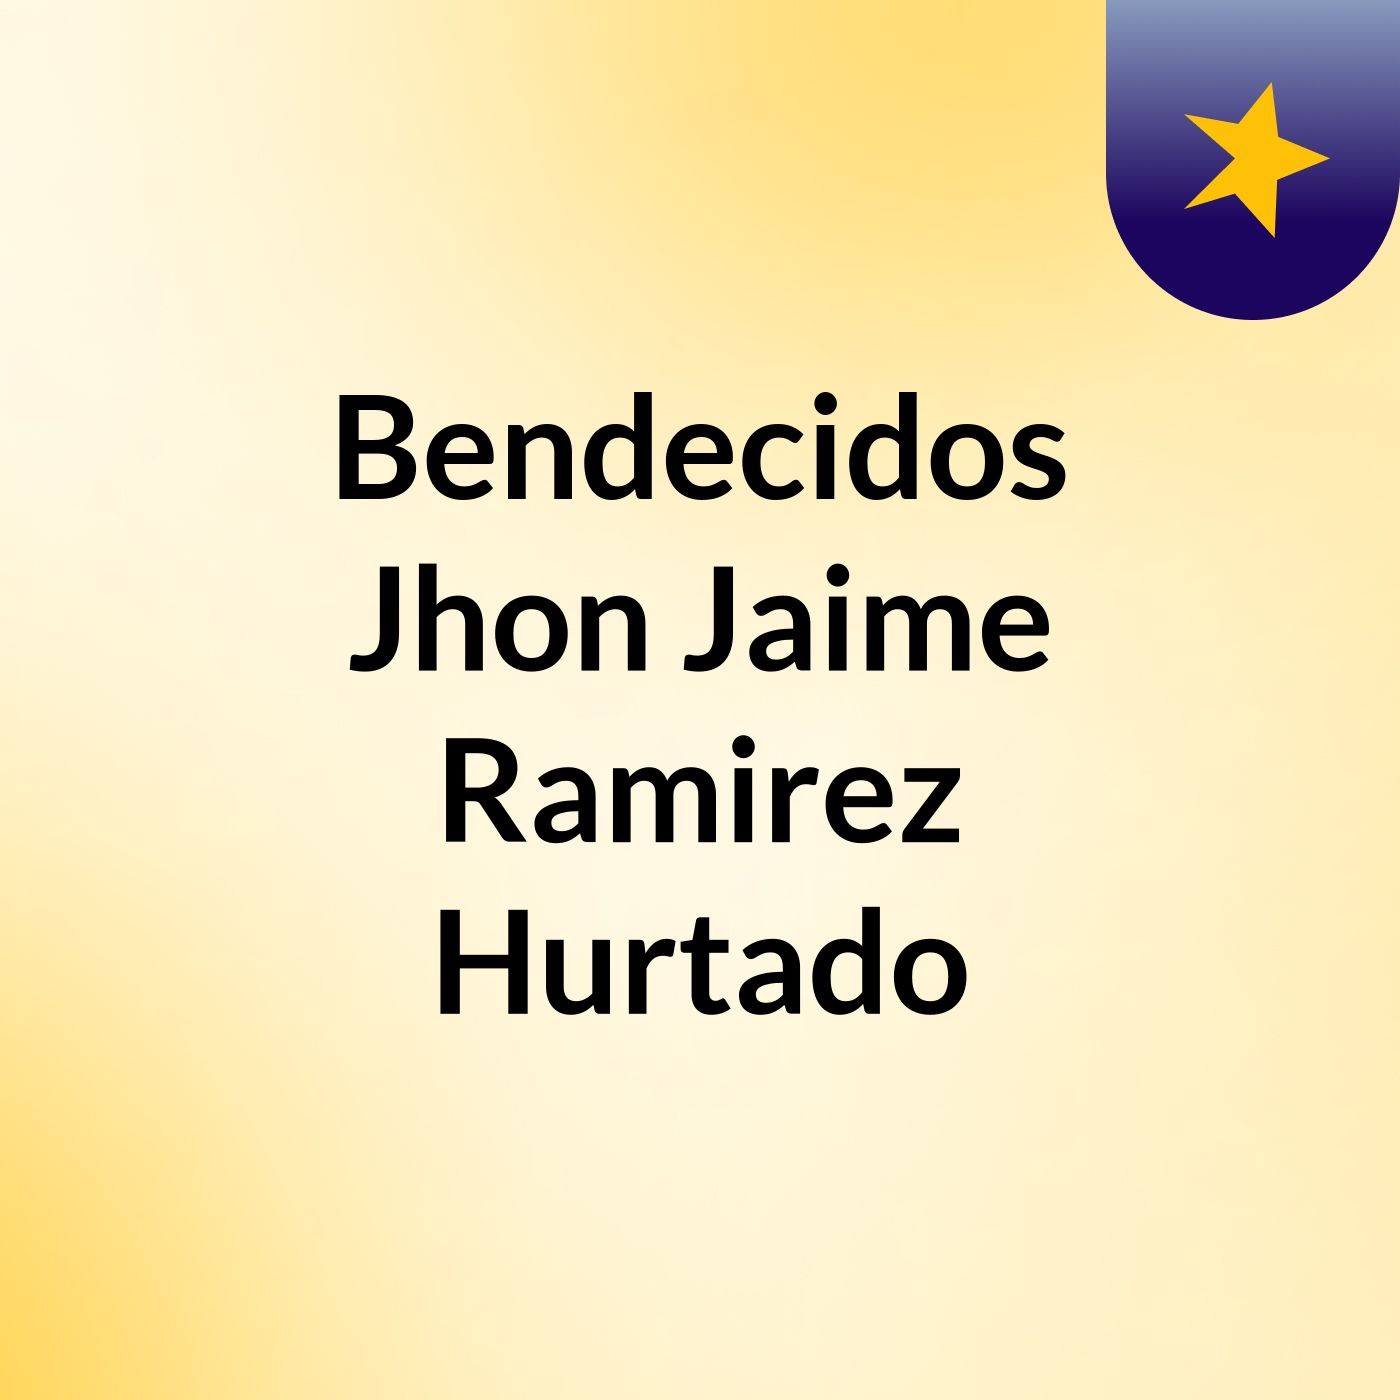 Episodio 8 - Bendecidos Jhon Jaime Ramirez Hurtado